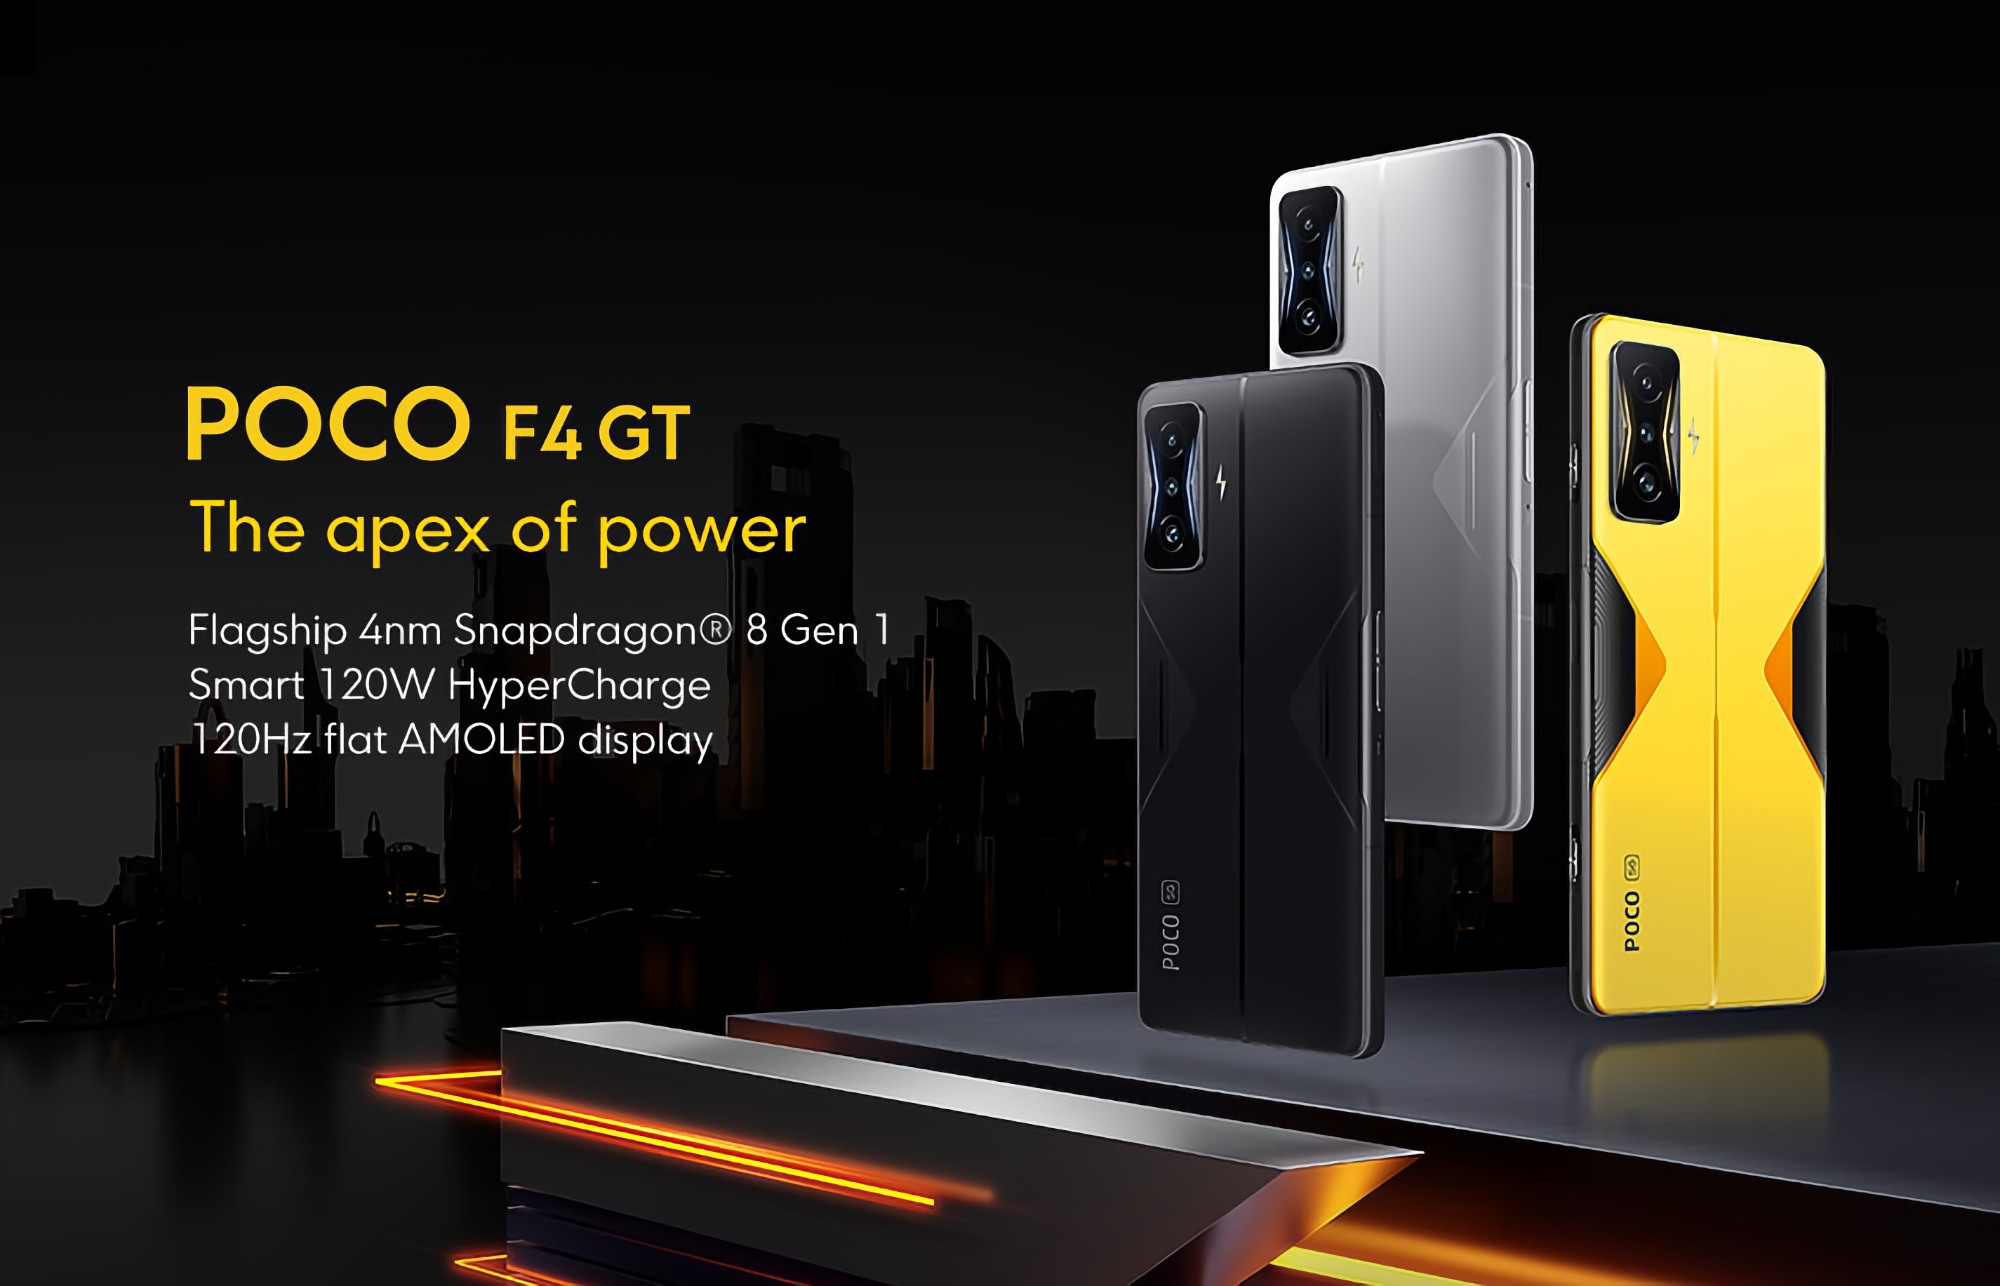 POCO F4 GT 5G estreno mundial en AliExpress: smartphone gaming con chip Snapdragon 8 Gen 1 a precio promocional